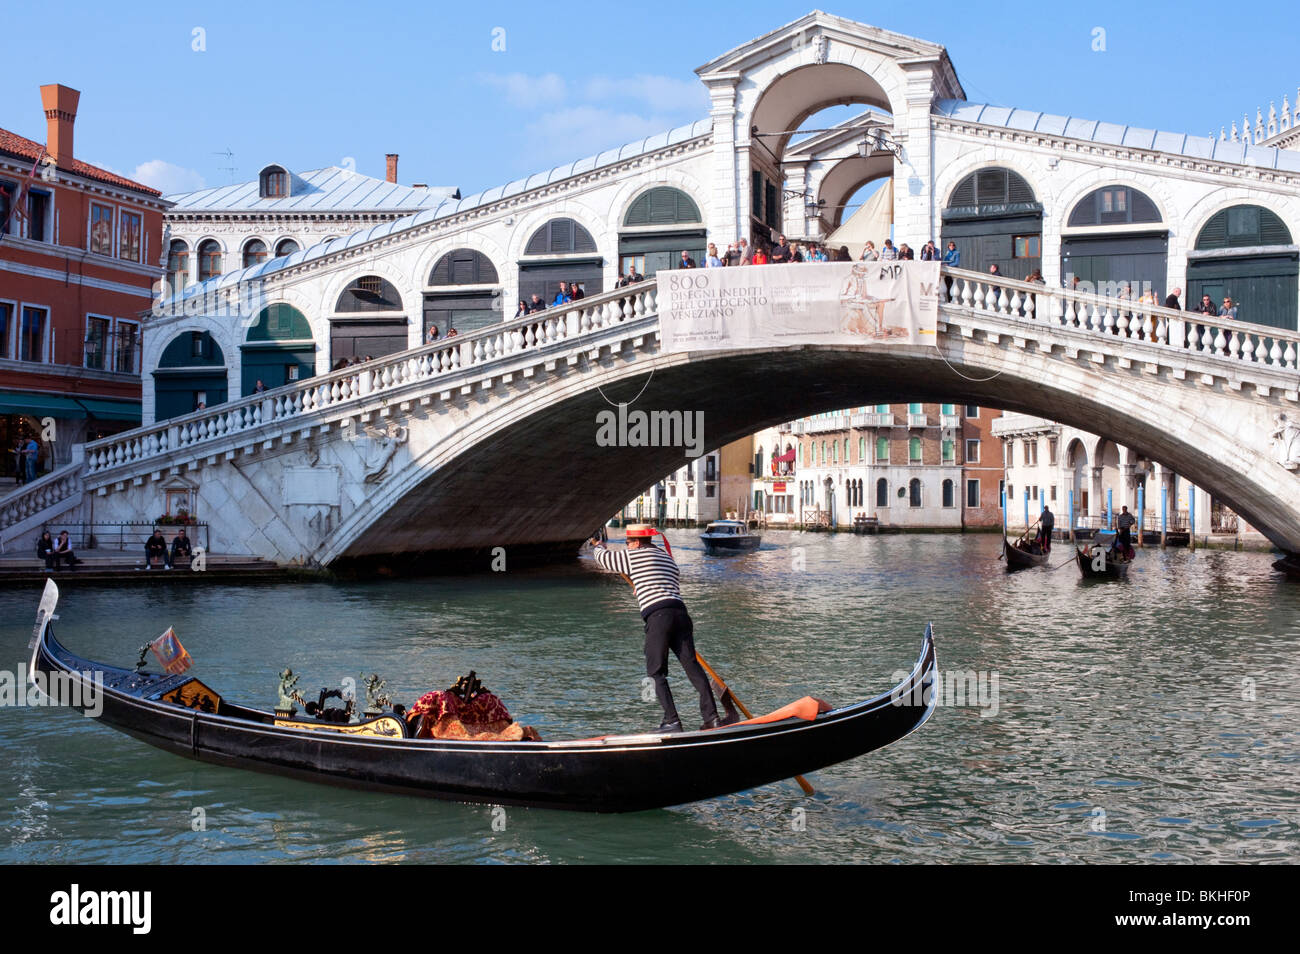 Gondoliere und seine Gondel auf dem Canale Grande am Rialto-Brücke in Venedig Italien Stockfoto